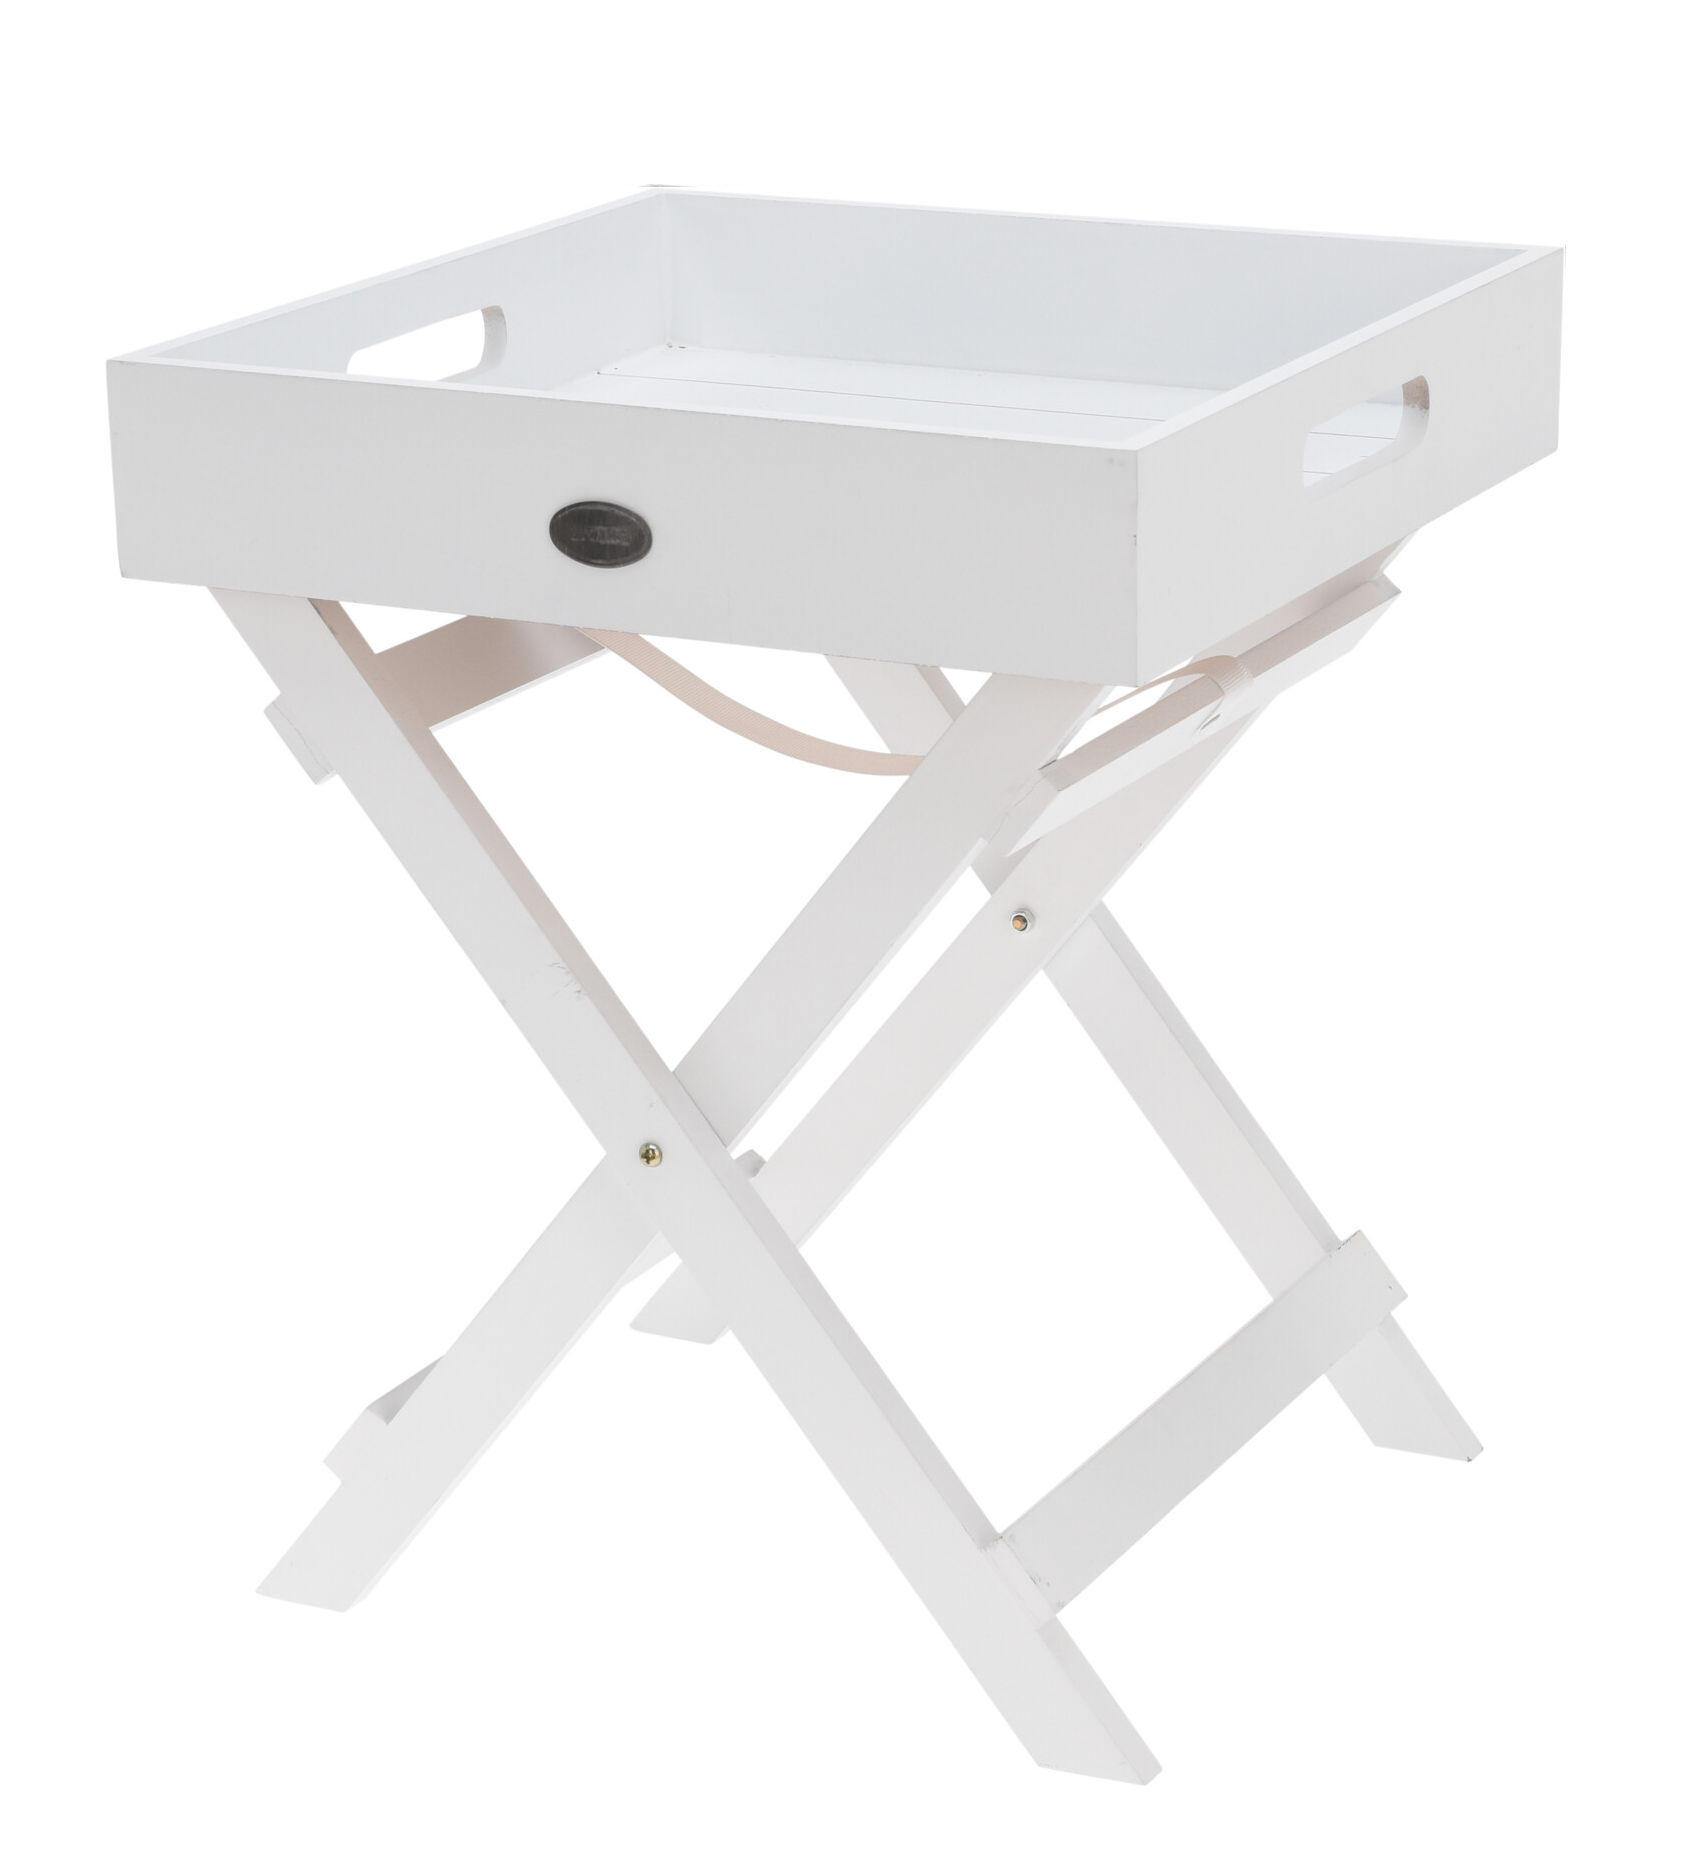 Holz Beistelltisch weiß mit abnehmbaren Tablett - 36 x 30 cm - klappbarer Deko Tisch 2-teilig 